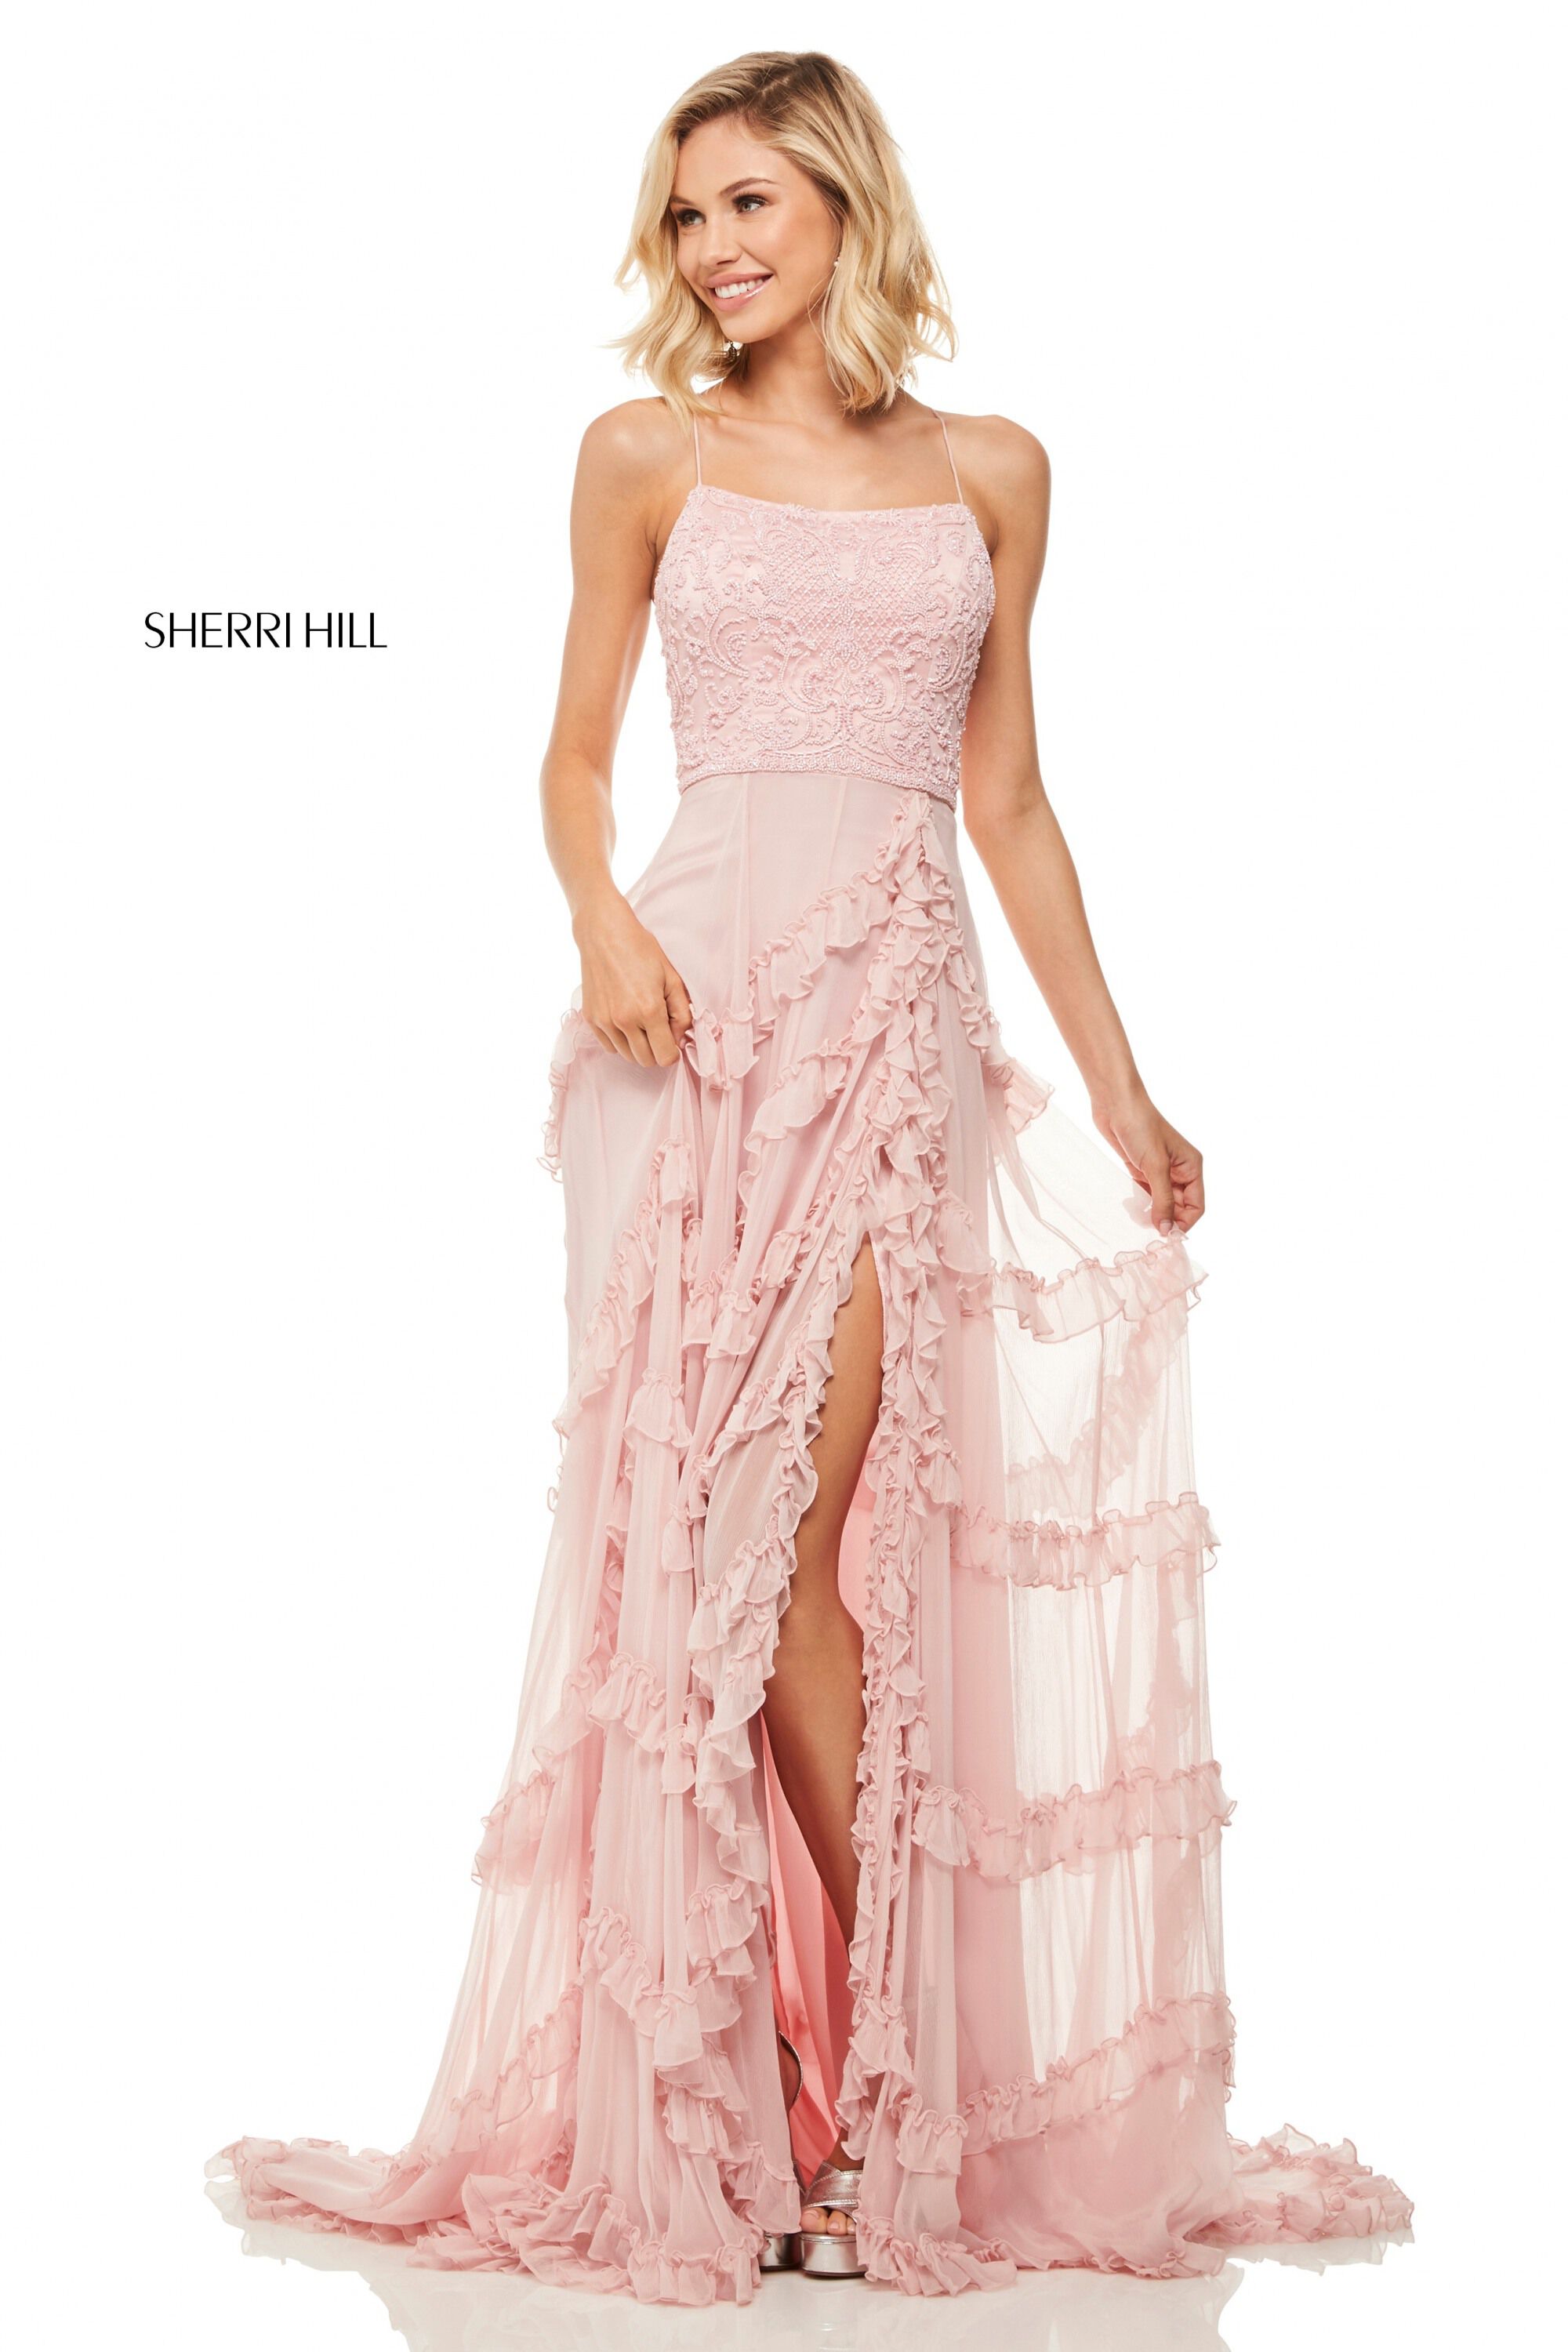 Sherri Hill Dresses For Sale Online ...